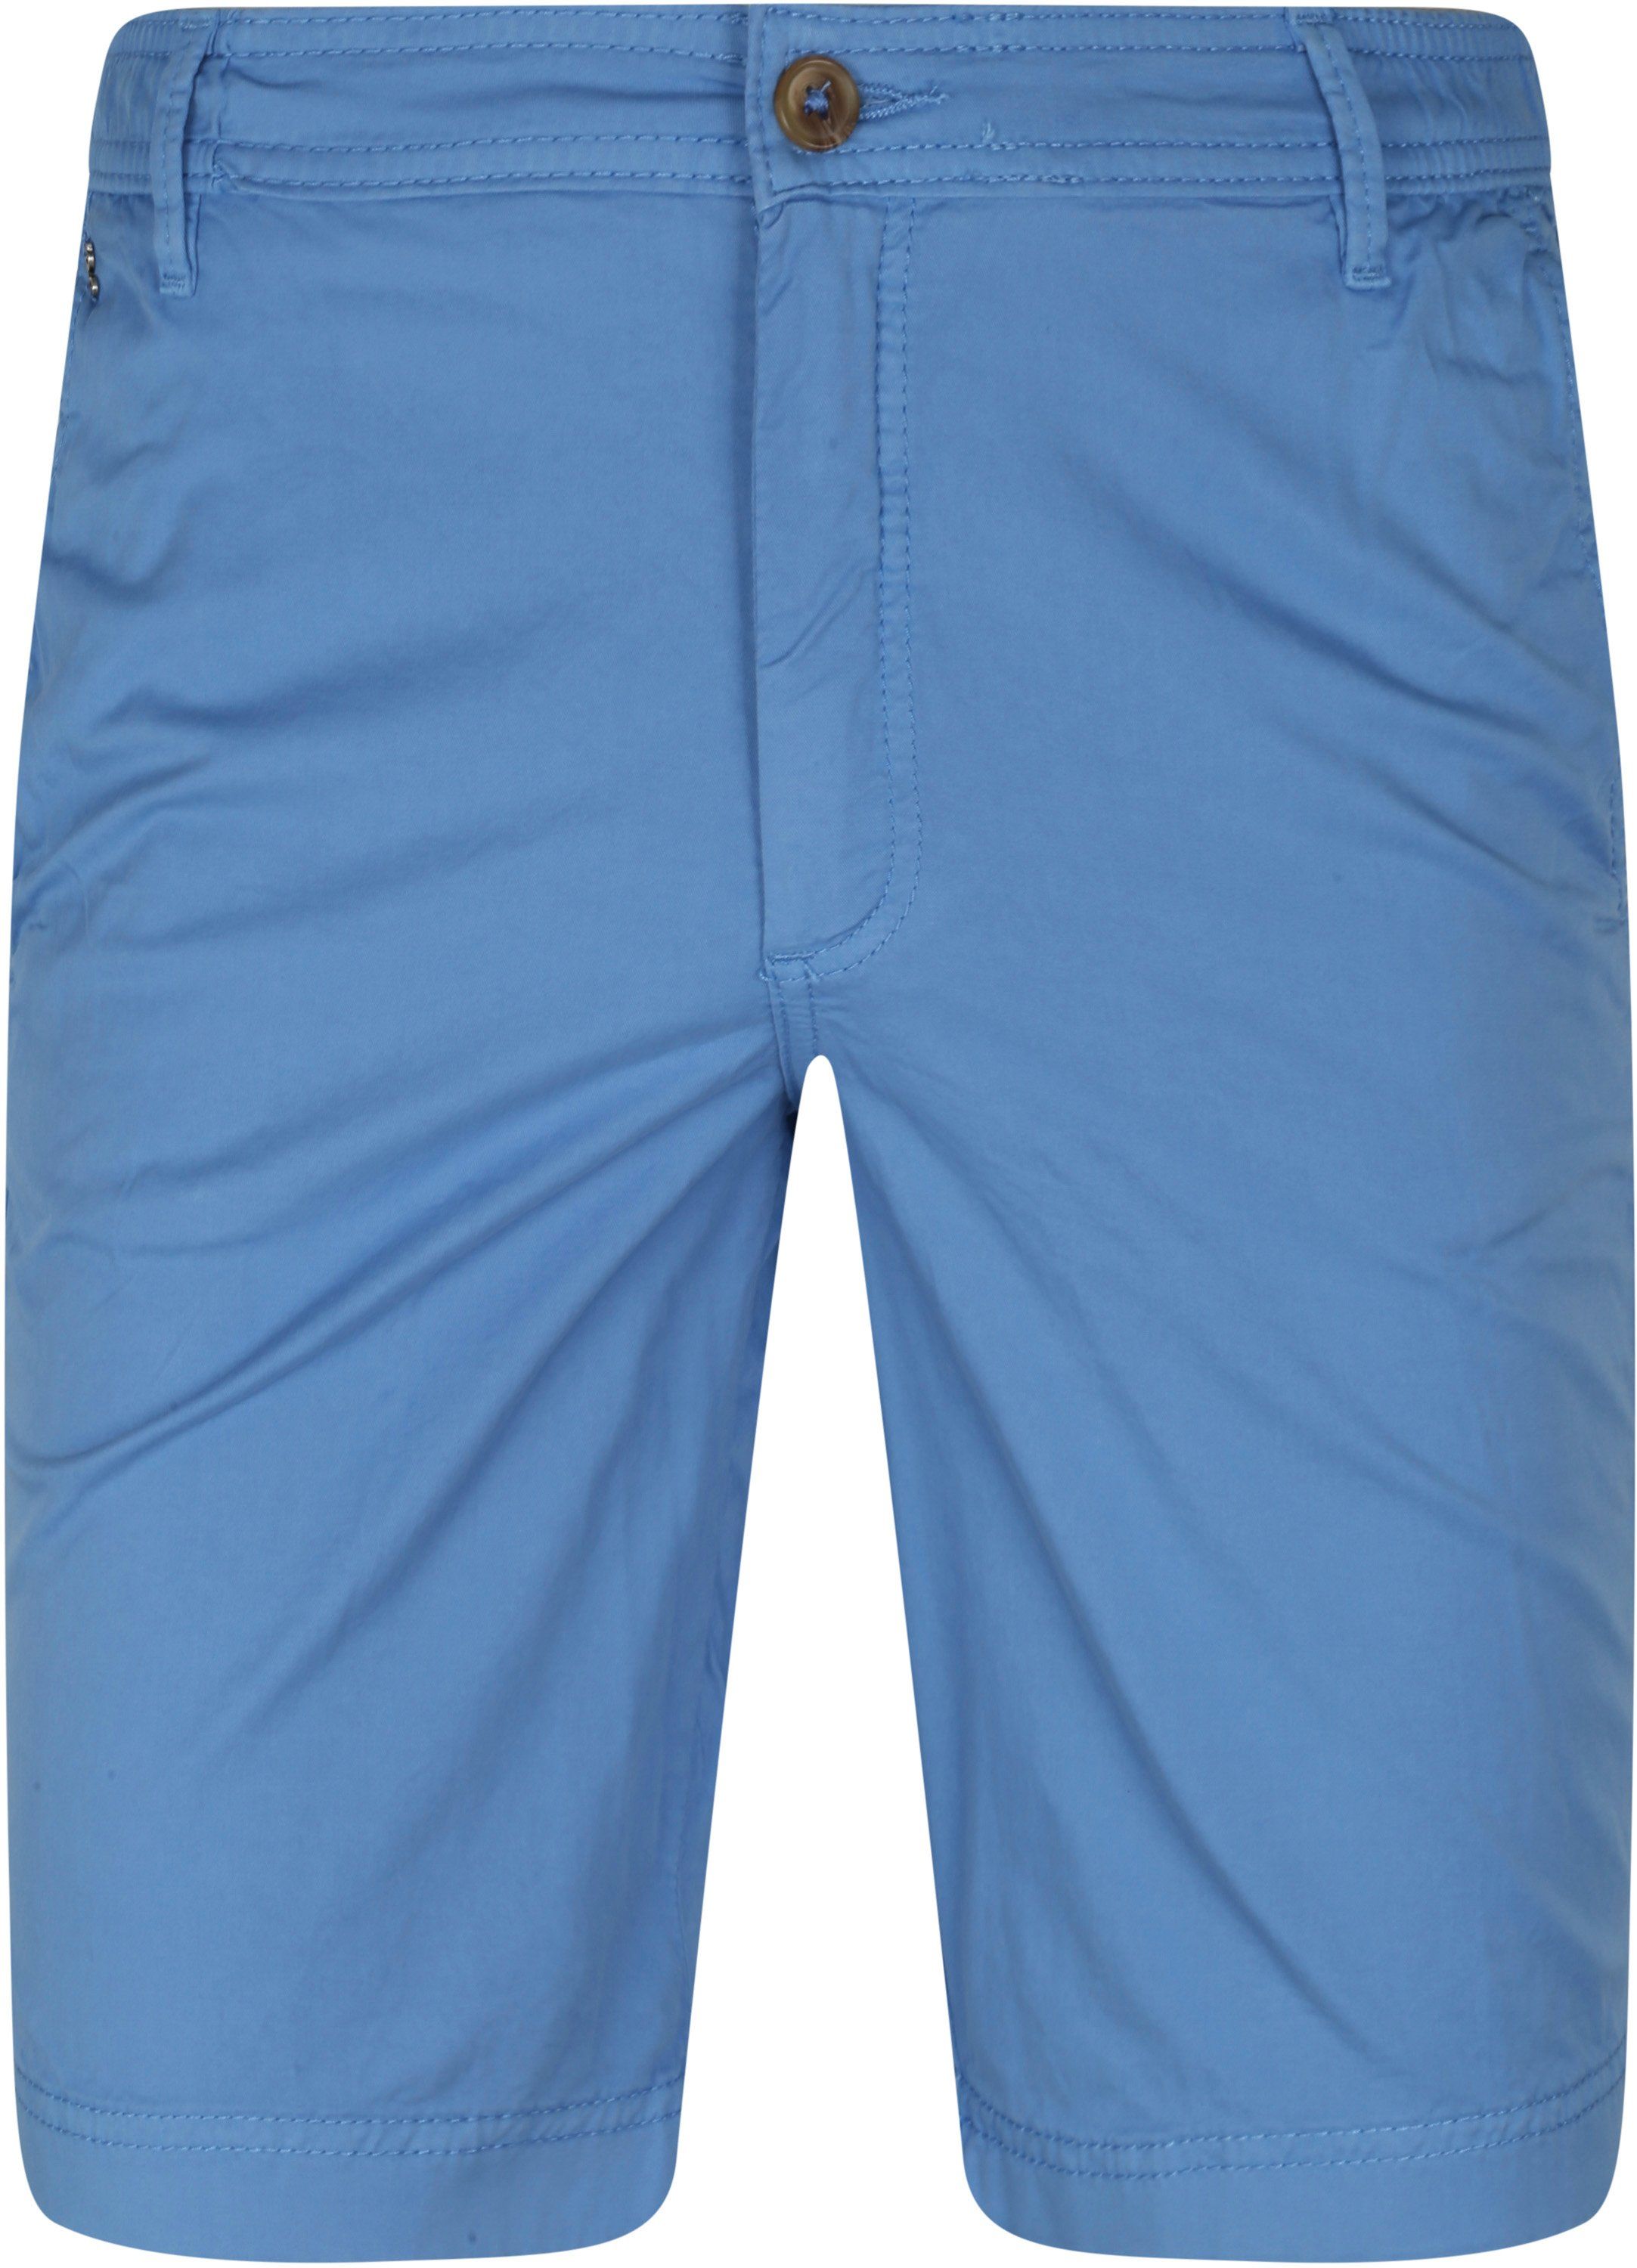 Gardeur Shorts Blue size L